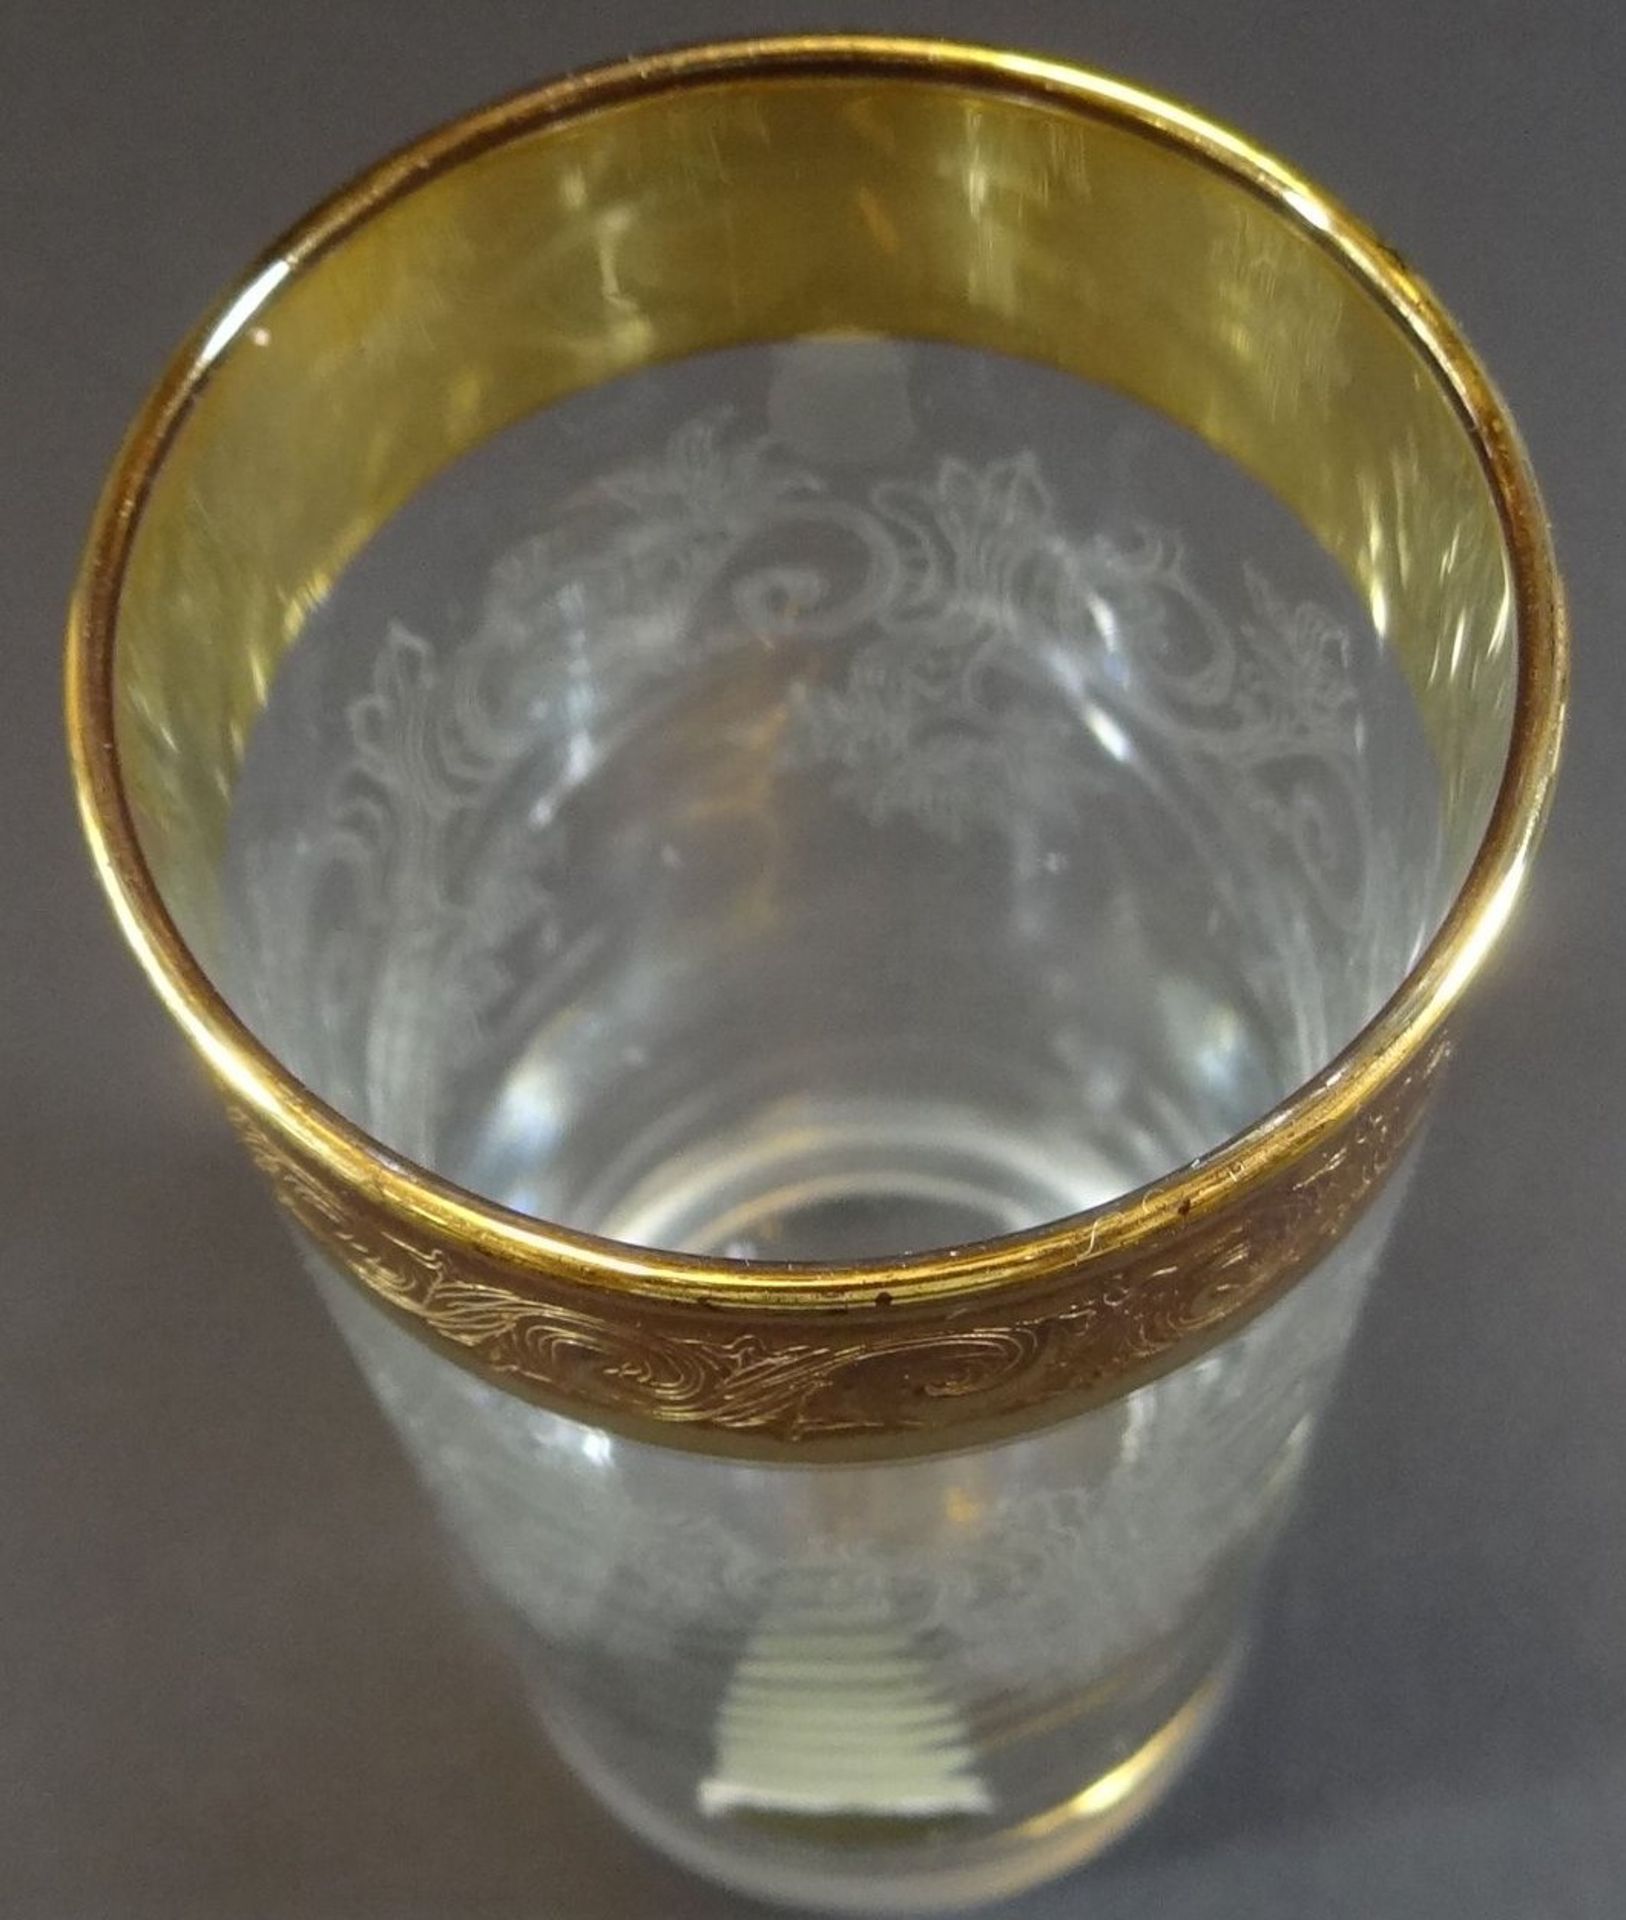 58 tg. Gläsersatz mit Golddekor, Handarbeit, H-max 16 cm, min. 6 cm, bei einigen Golddekor berieben - Bild 7 aus 16